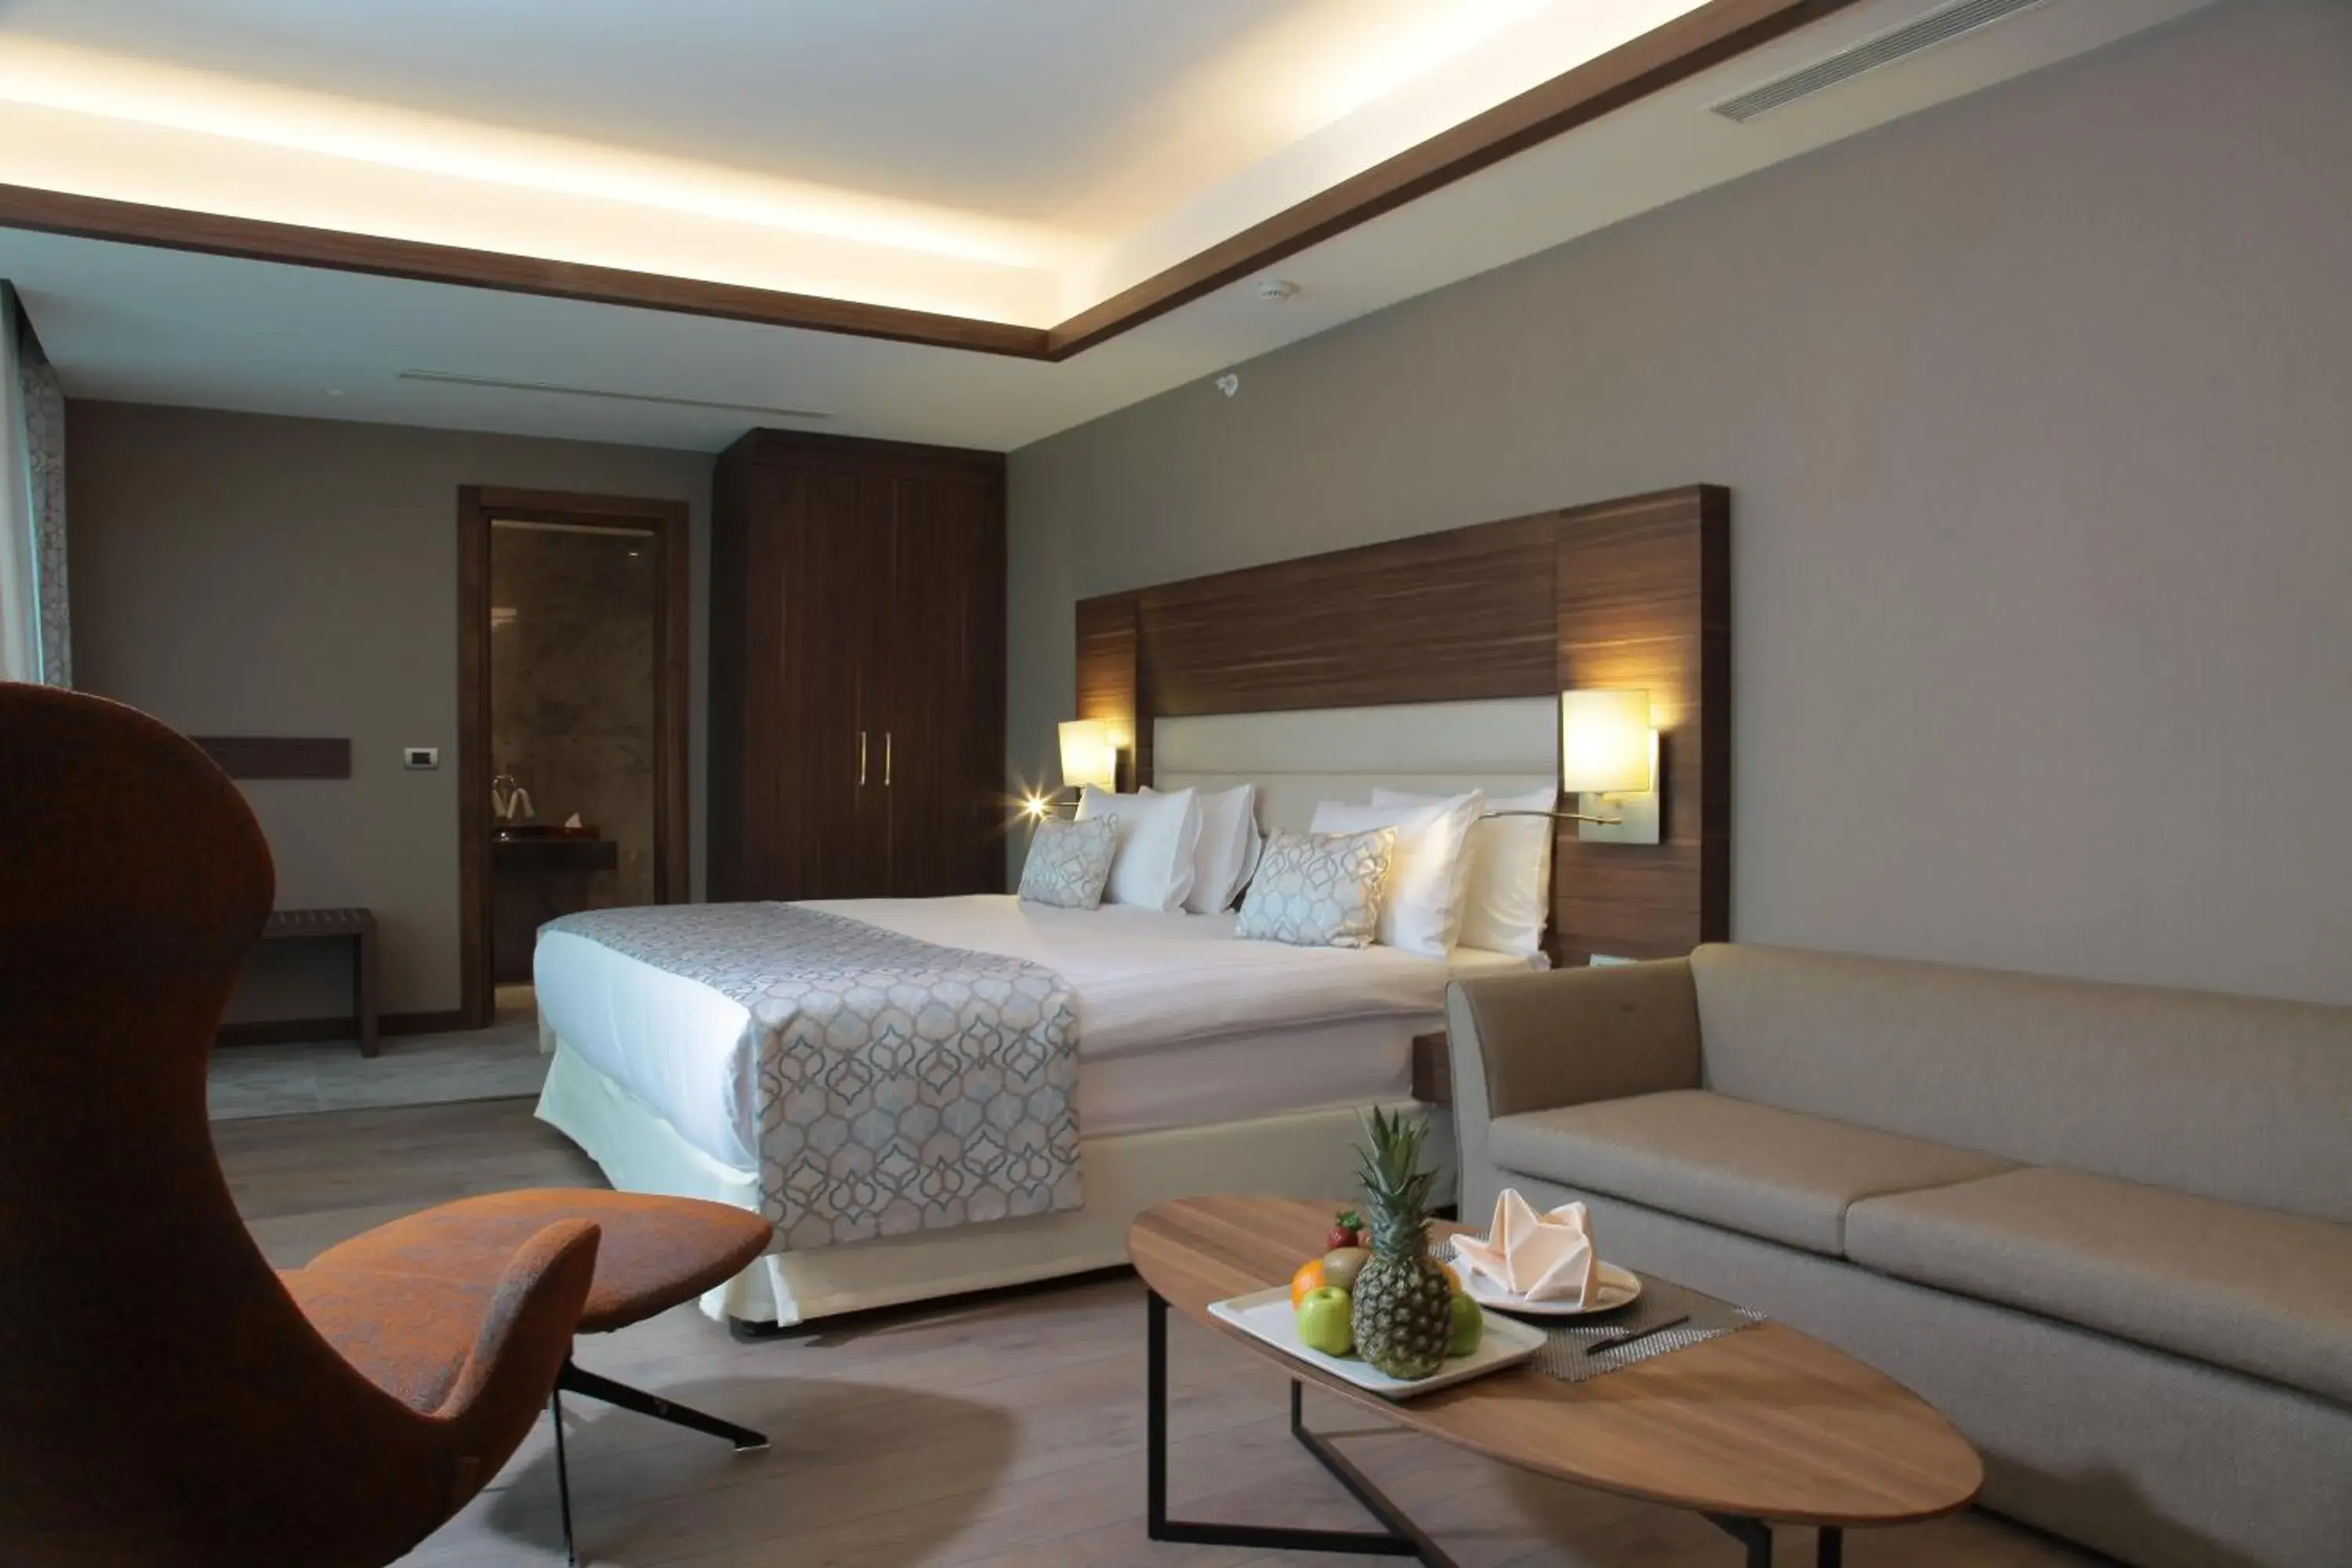 Bedroom in Bricks Hotel İstanbul